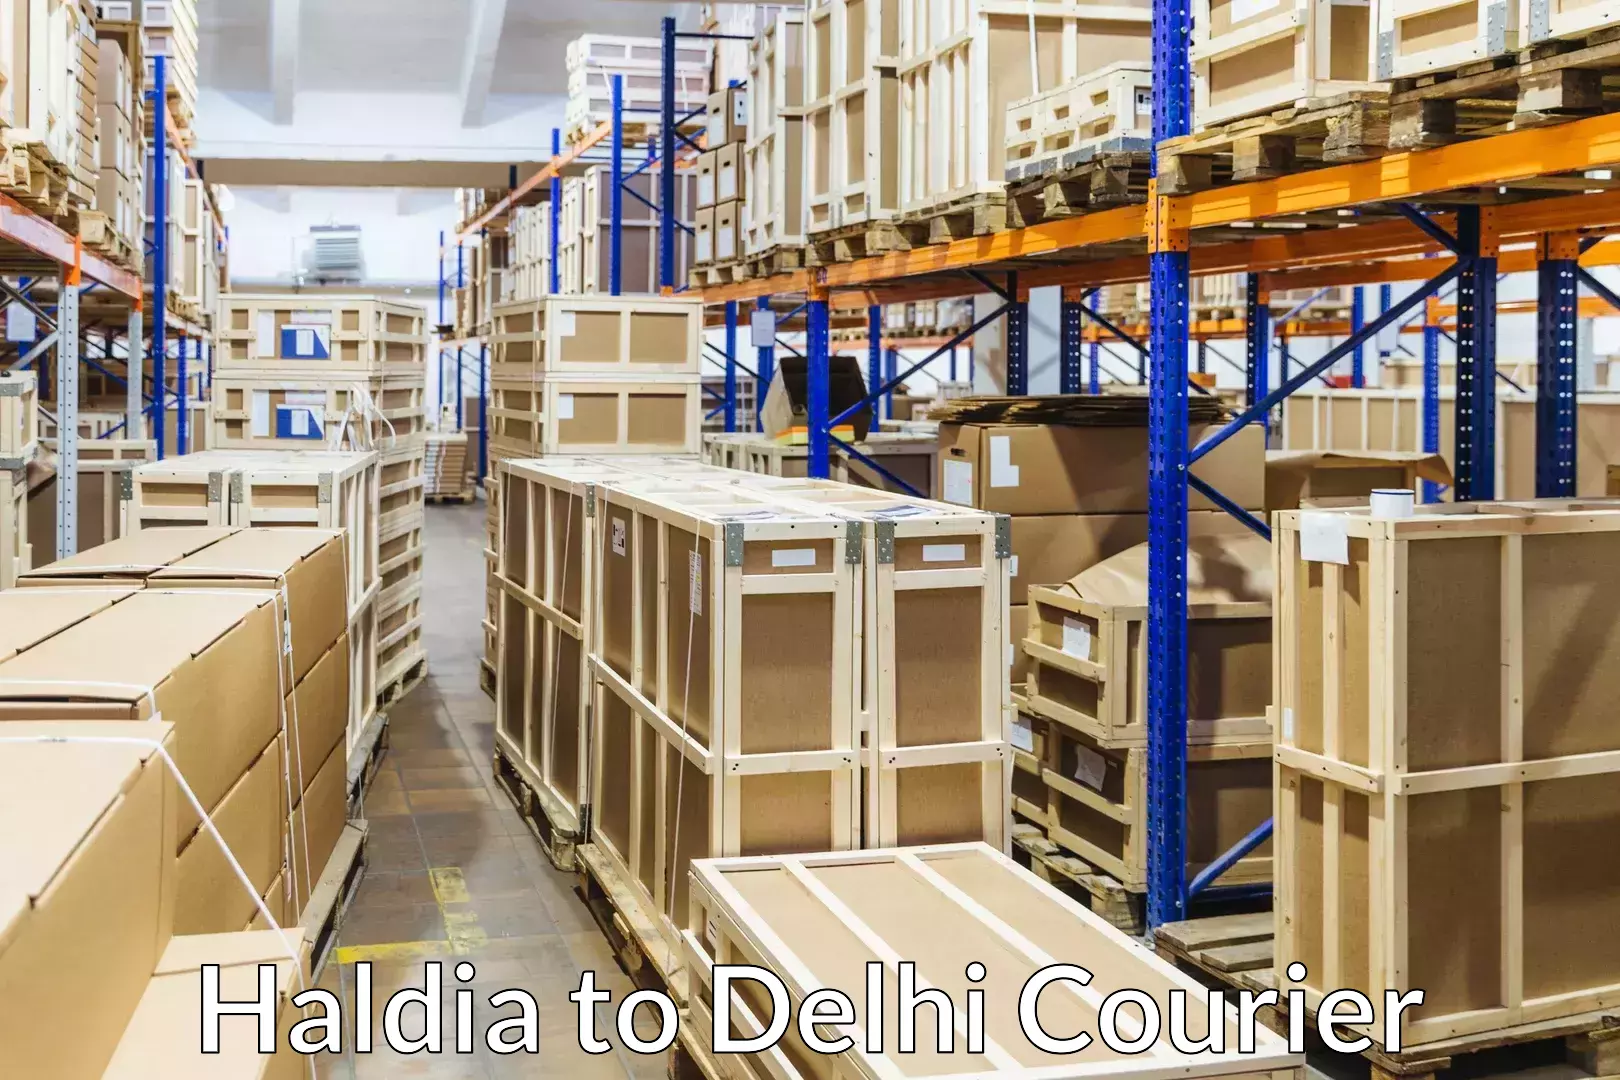 Home shifting experts Haldia to Delhi